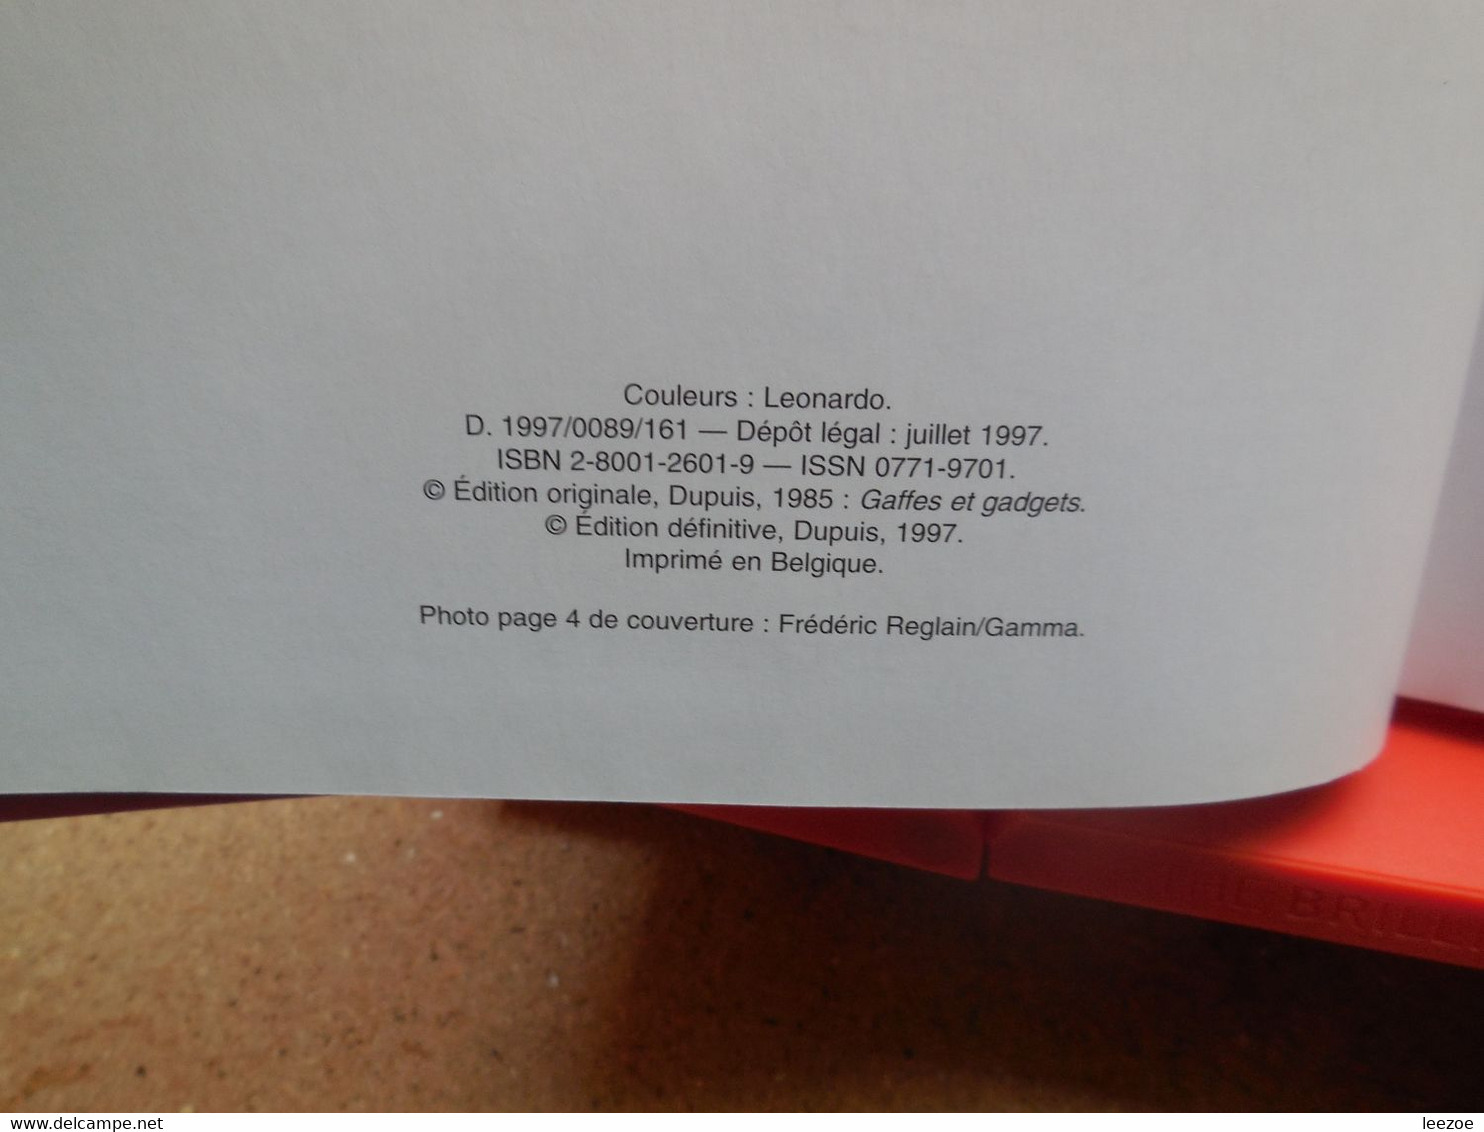 BD GASTON N°1 édition spéciale 40ème anniversaire, dédicace avec signature à identifier ( Liliane Franquin????)....C4B02